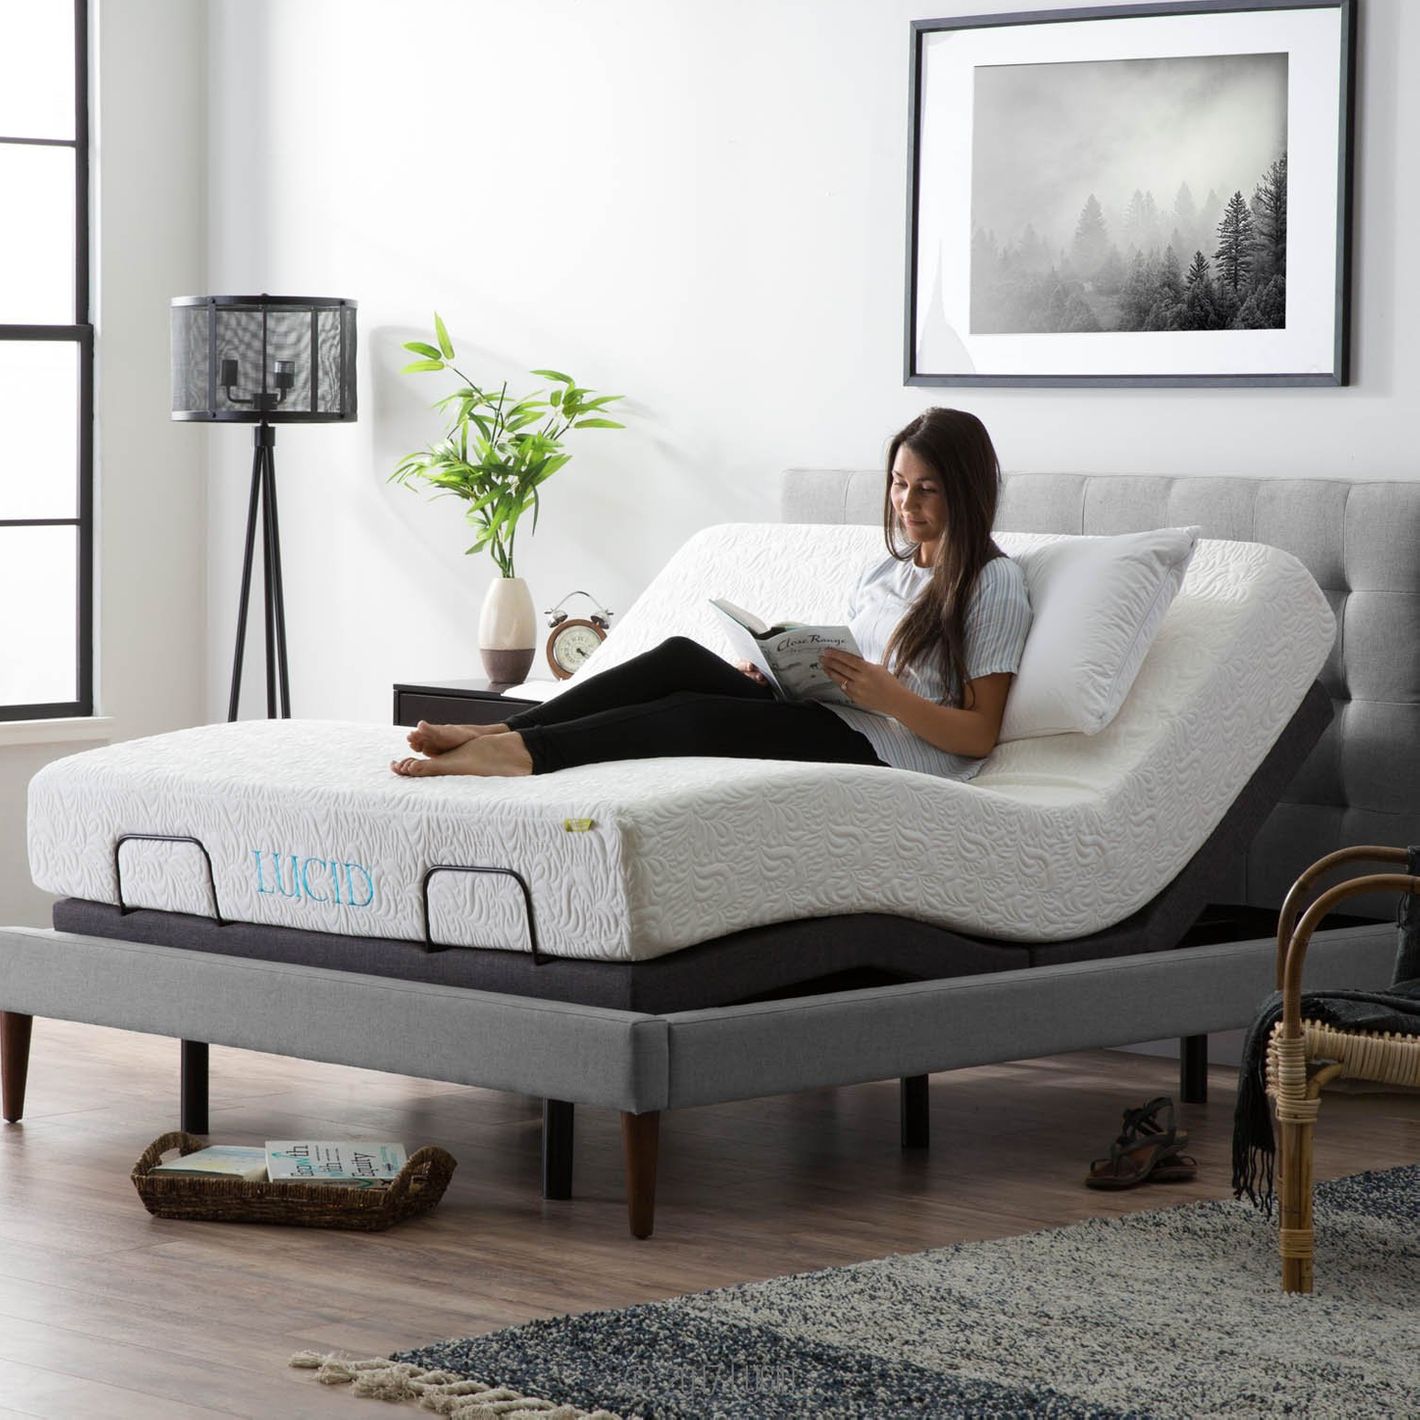 10 Best Adjustable Bed Bases 2021 The, Bed Frame For King Size Adjustable